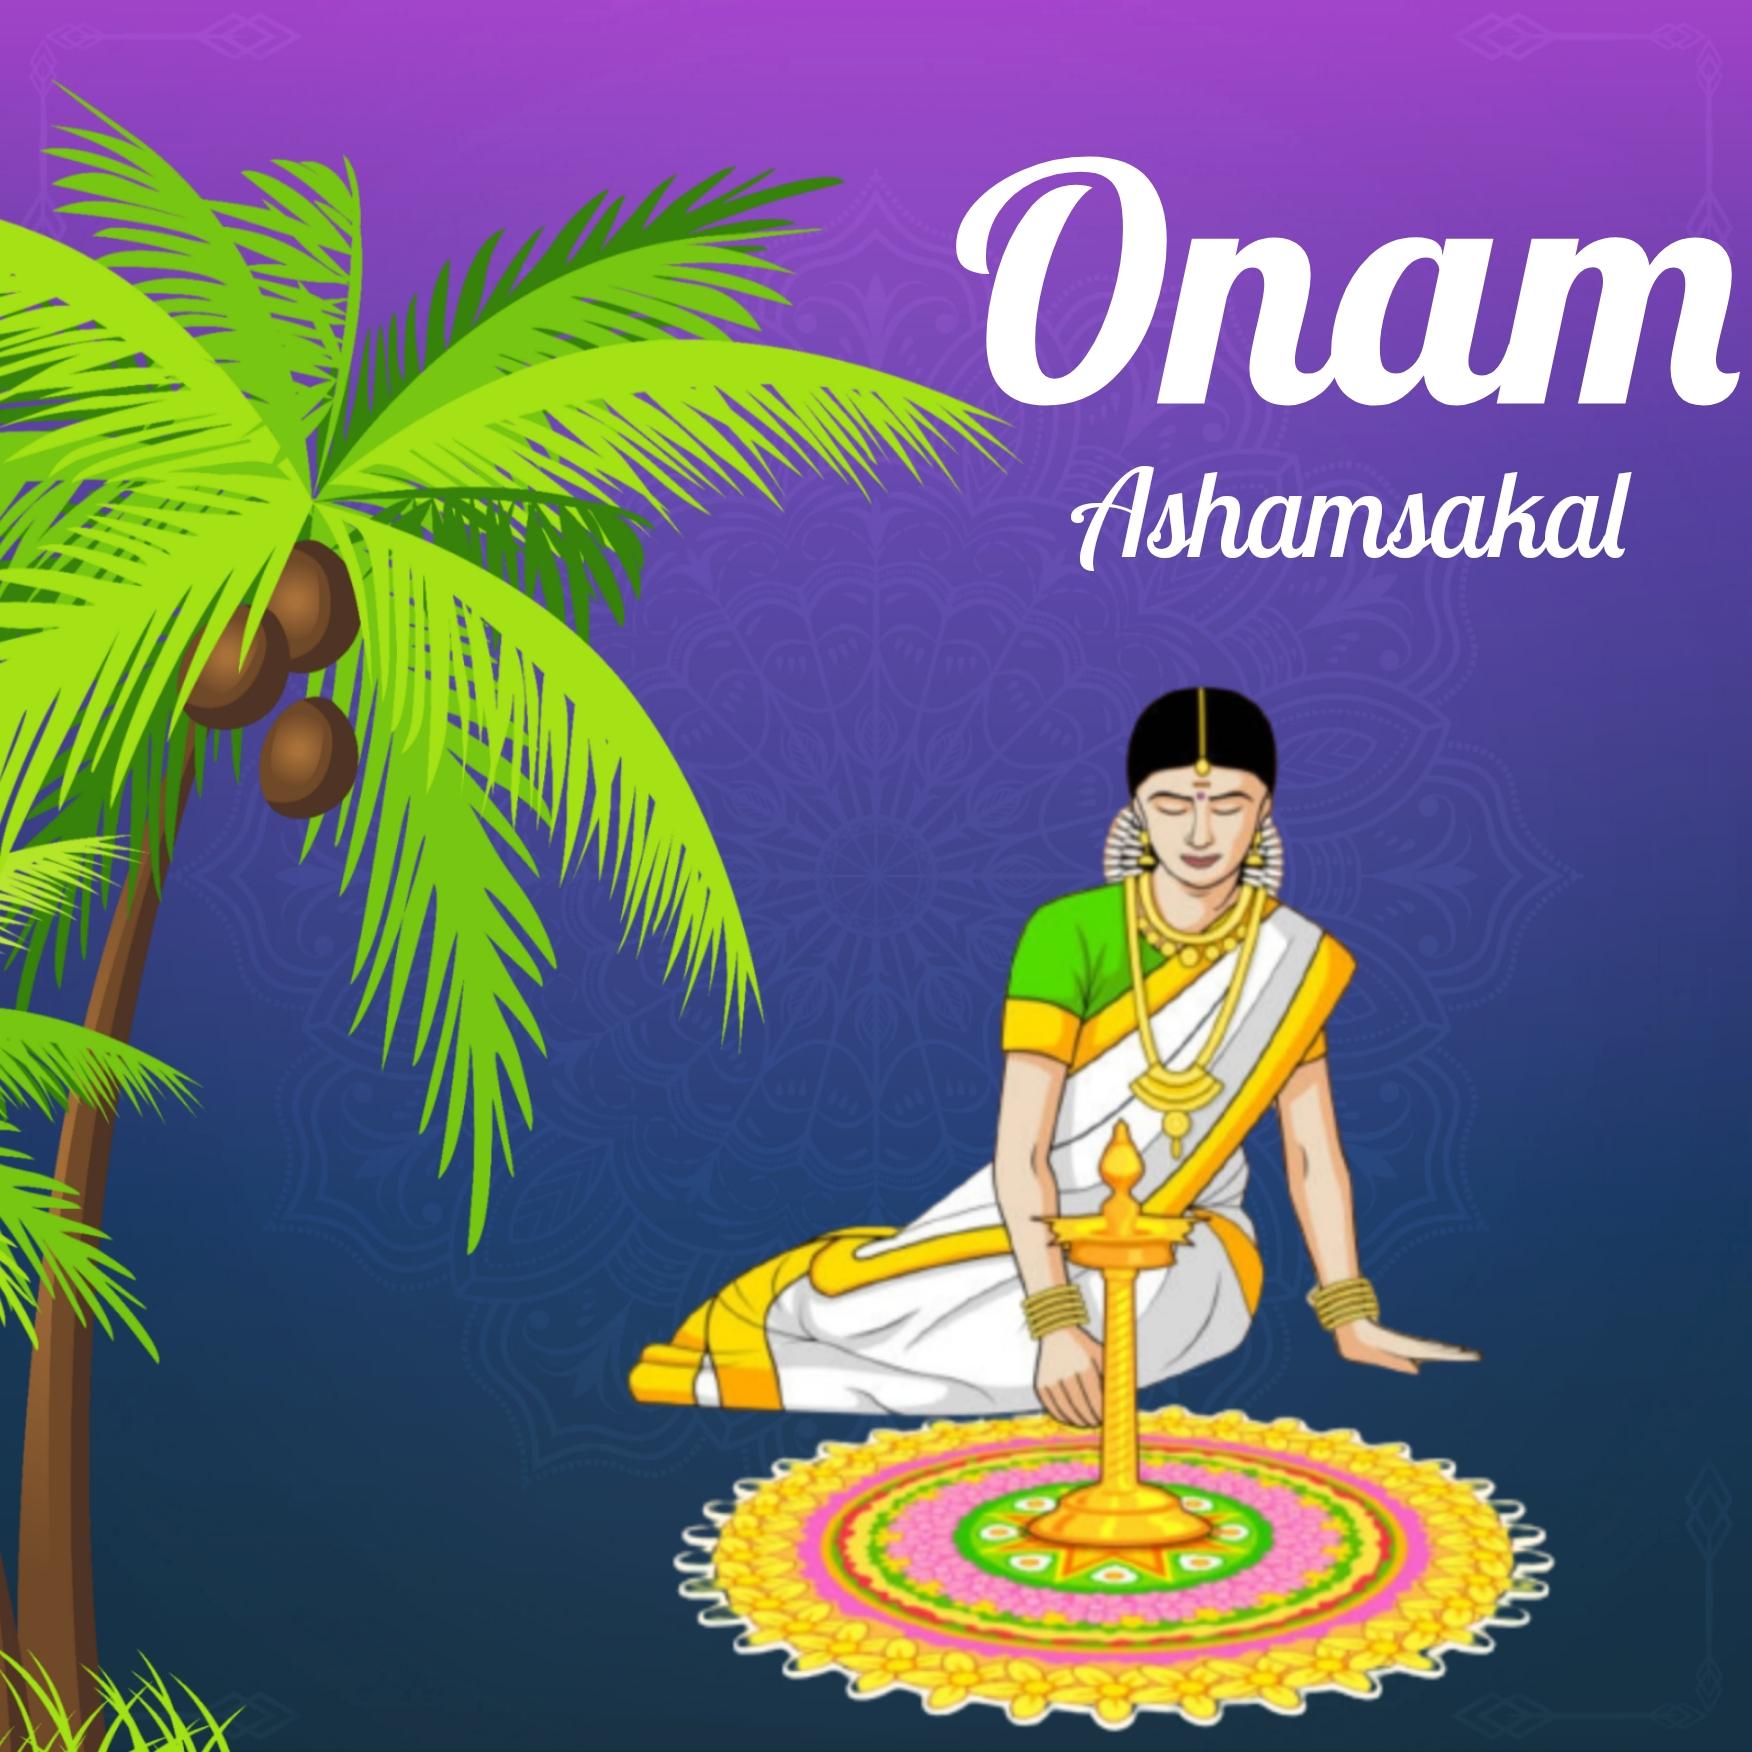 Onam Ashamsakal 2022 Images Download